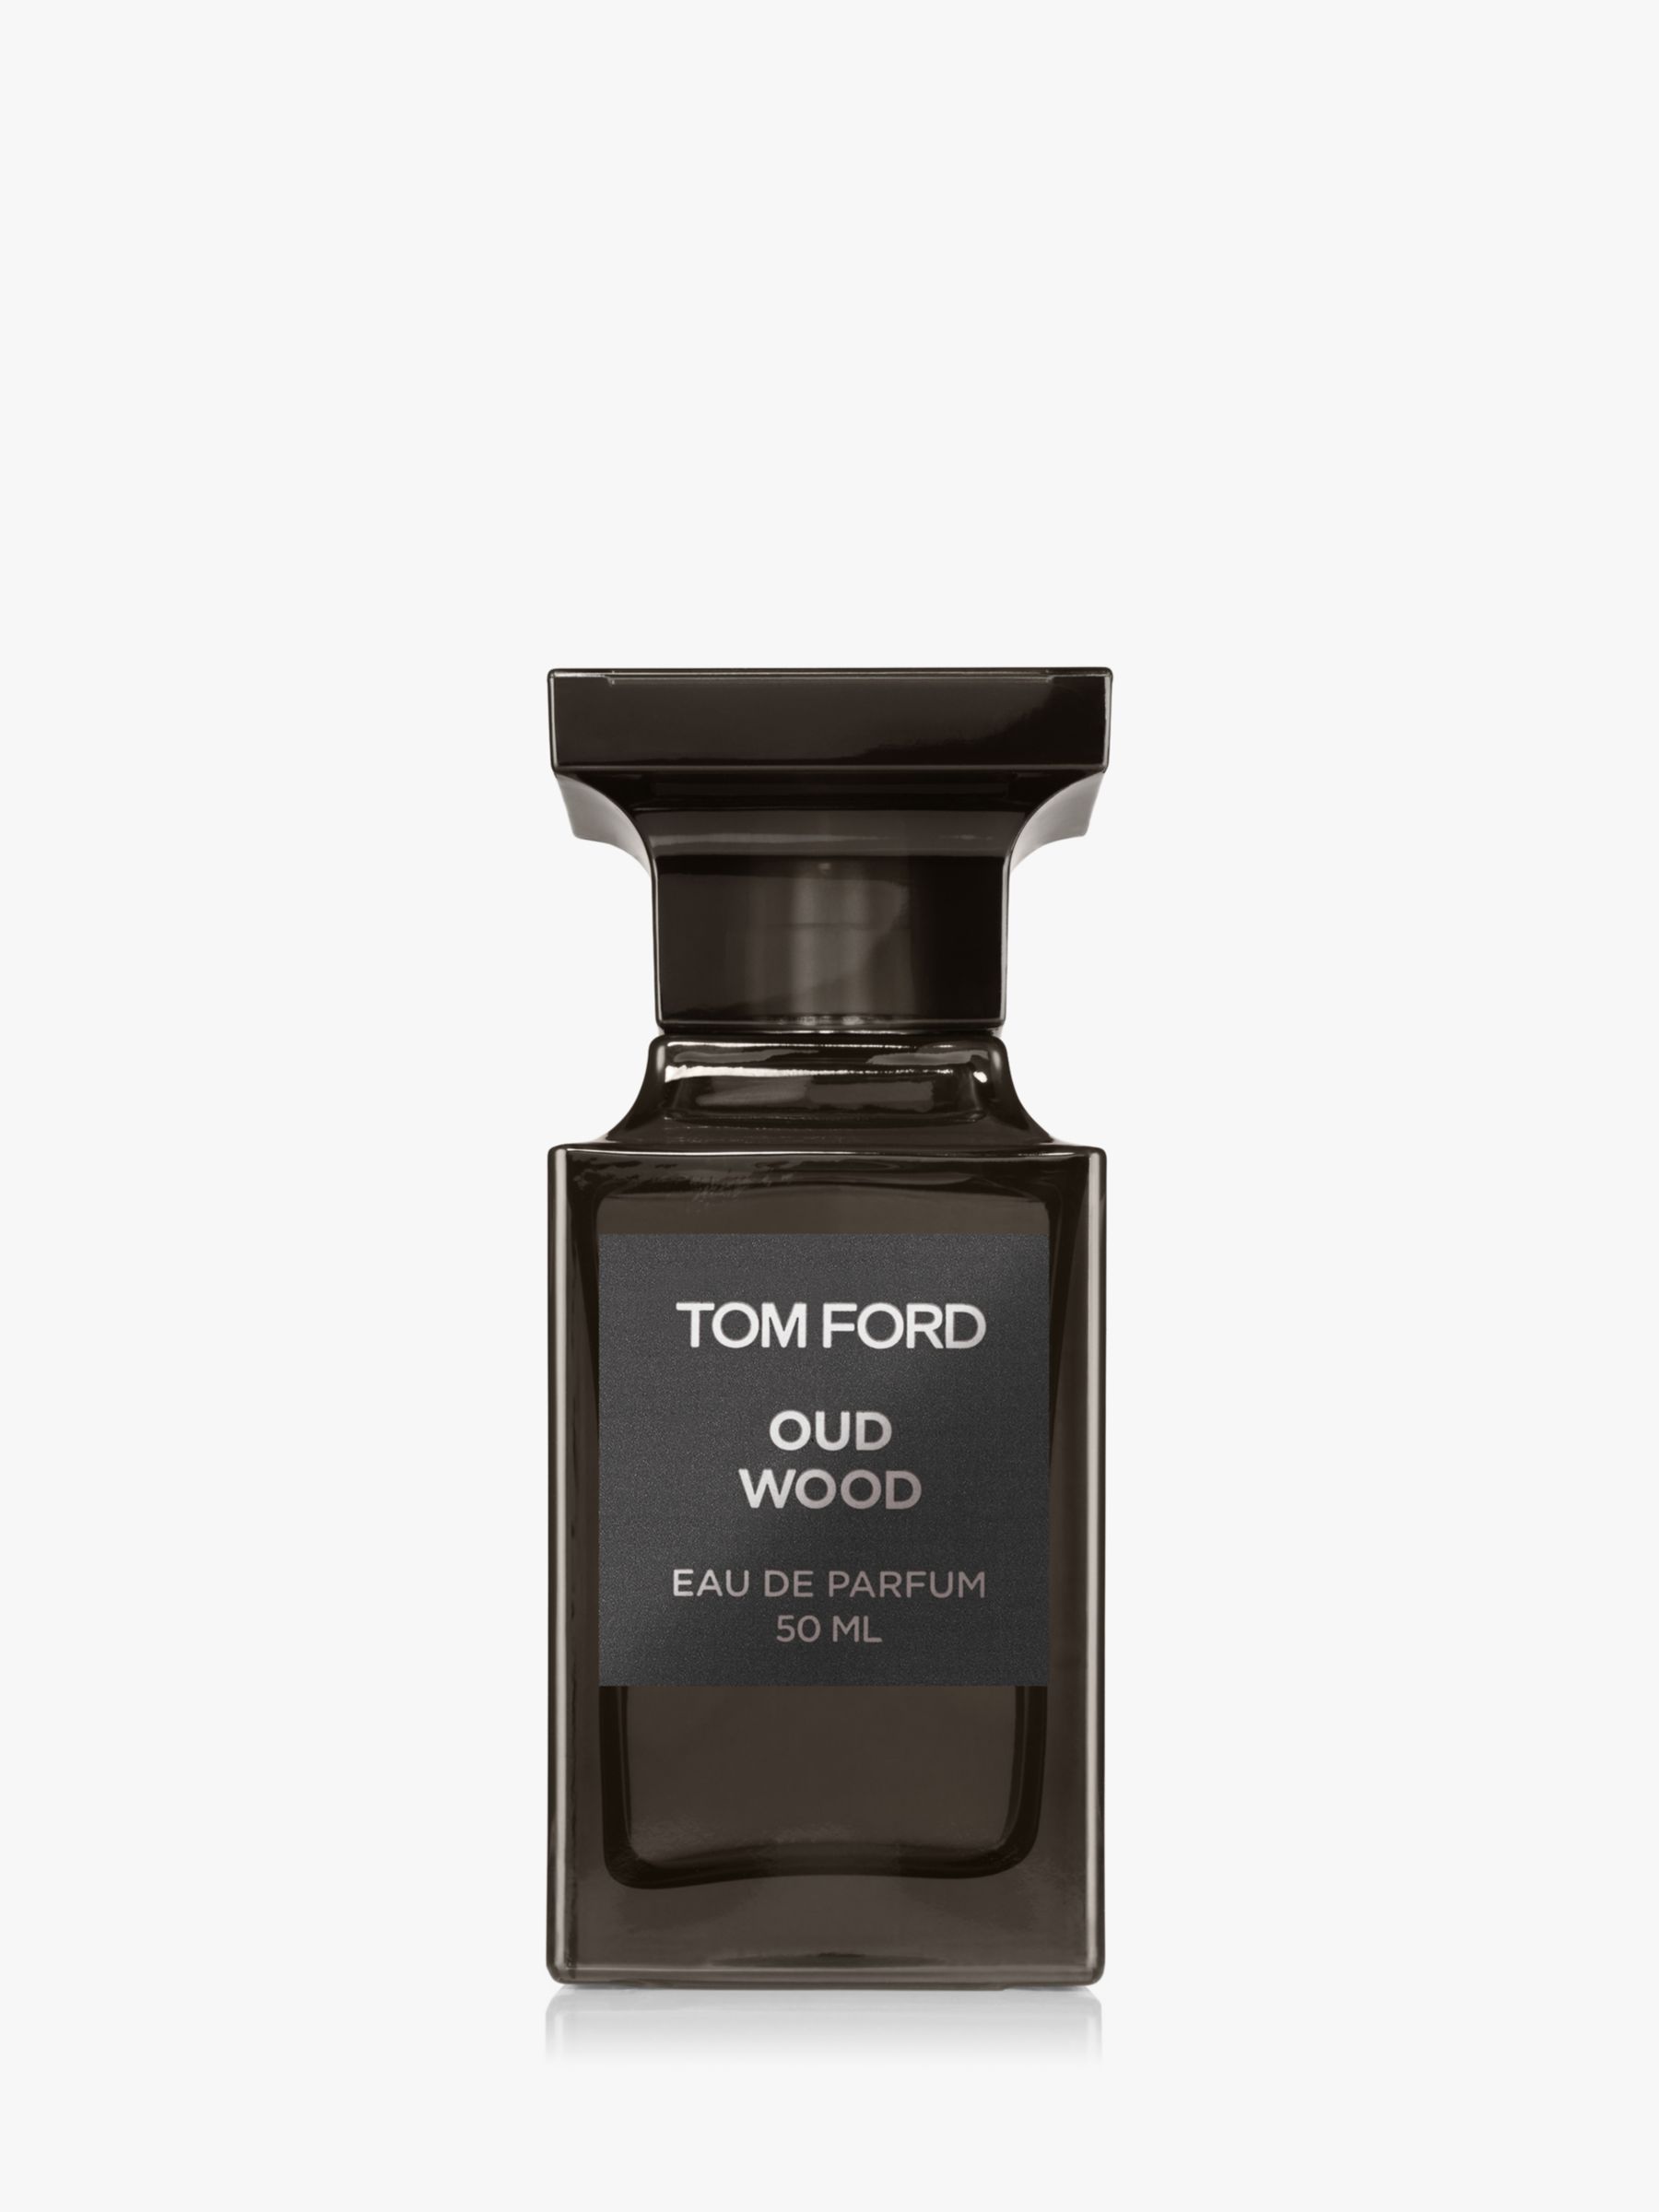 TOM FORD Private Blend Oud Wood Eau De Parfum, 50ml at John Lewis & Partners